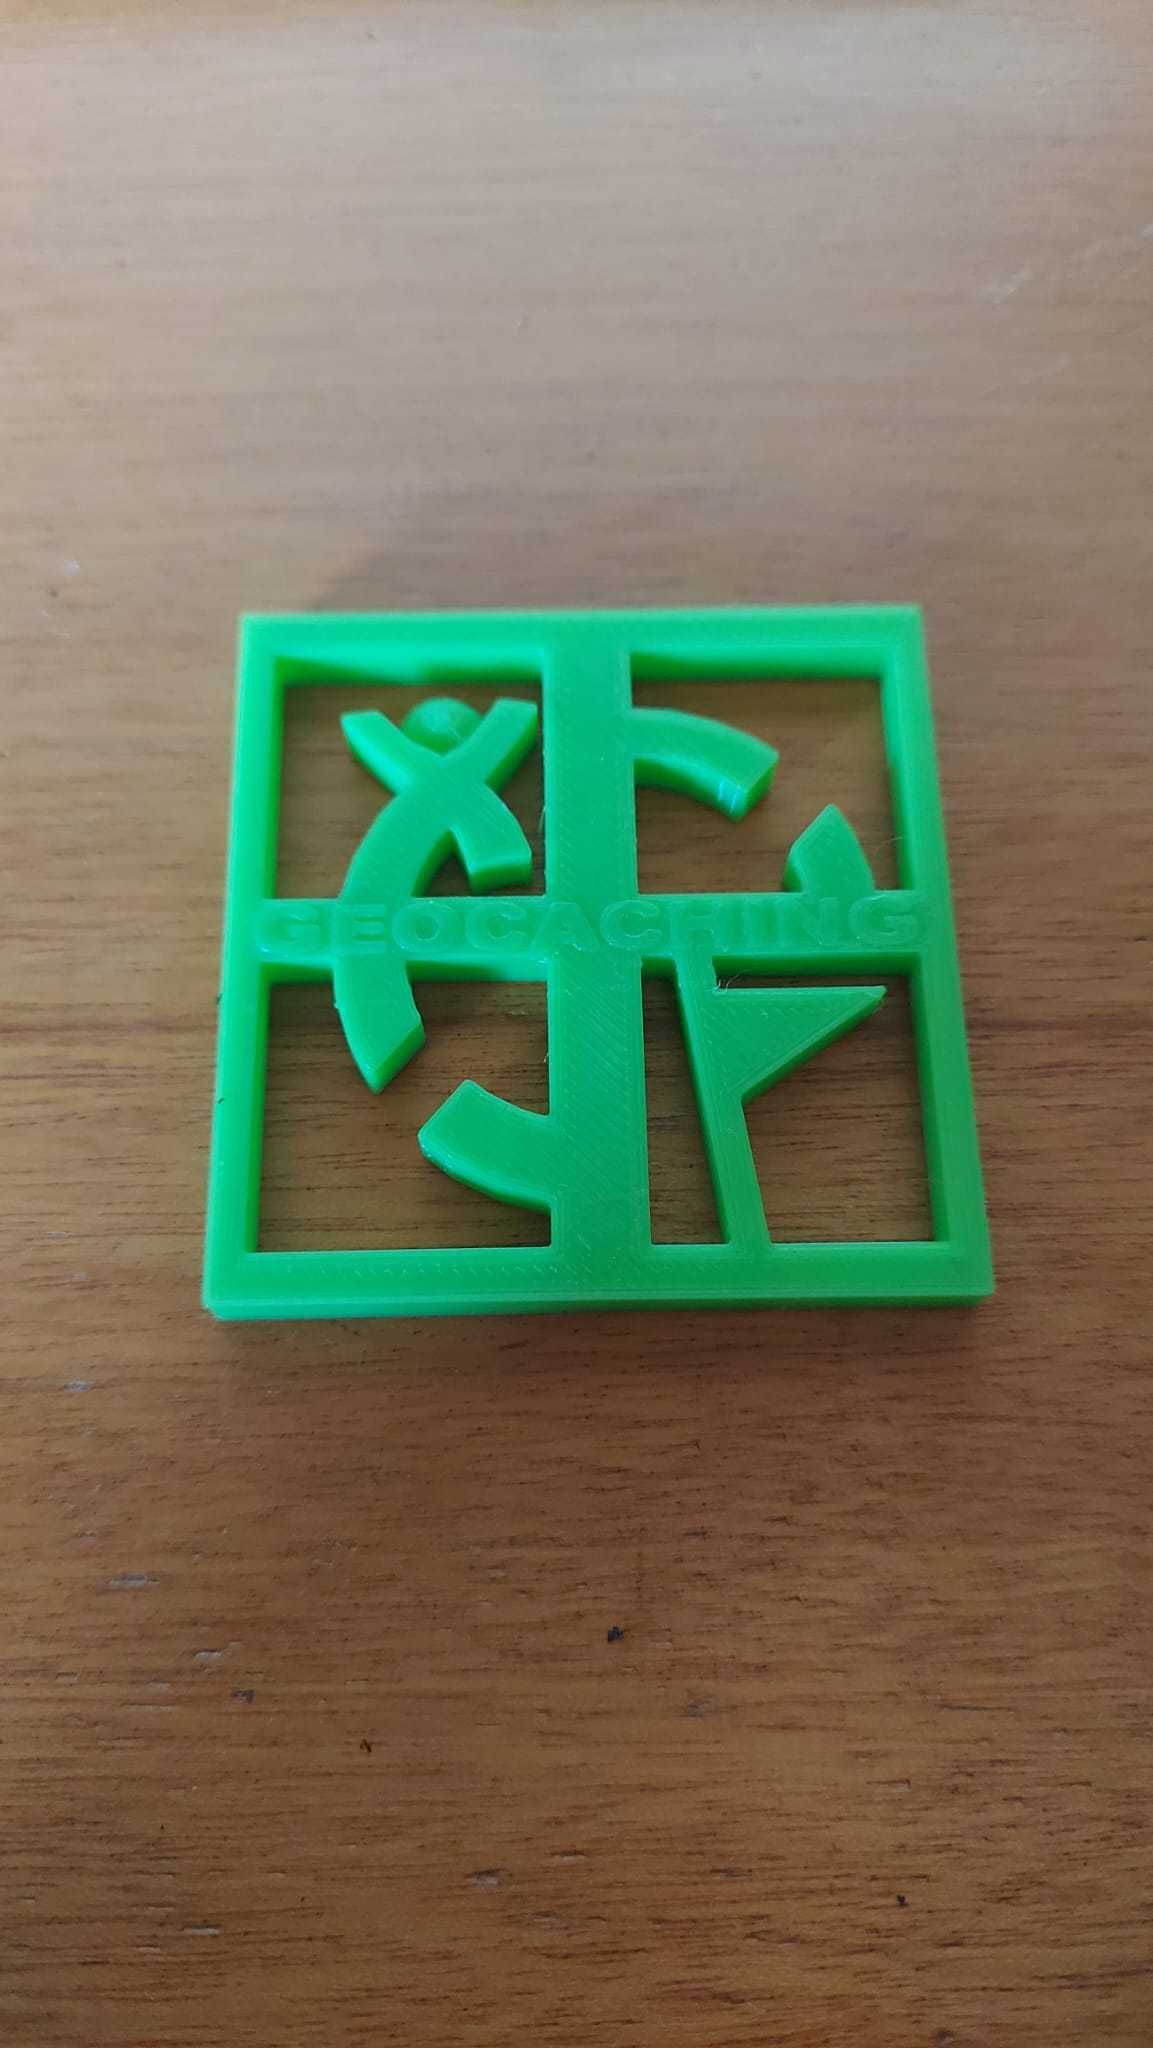 Geocaching - Simbolo impresso em 3D